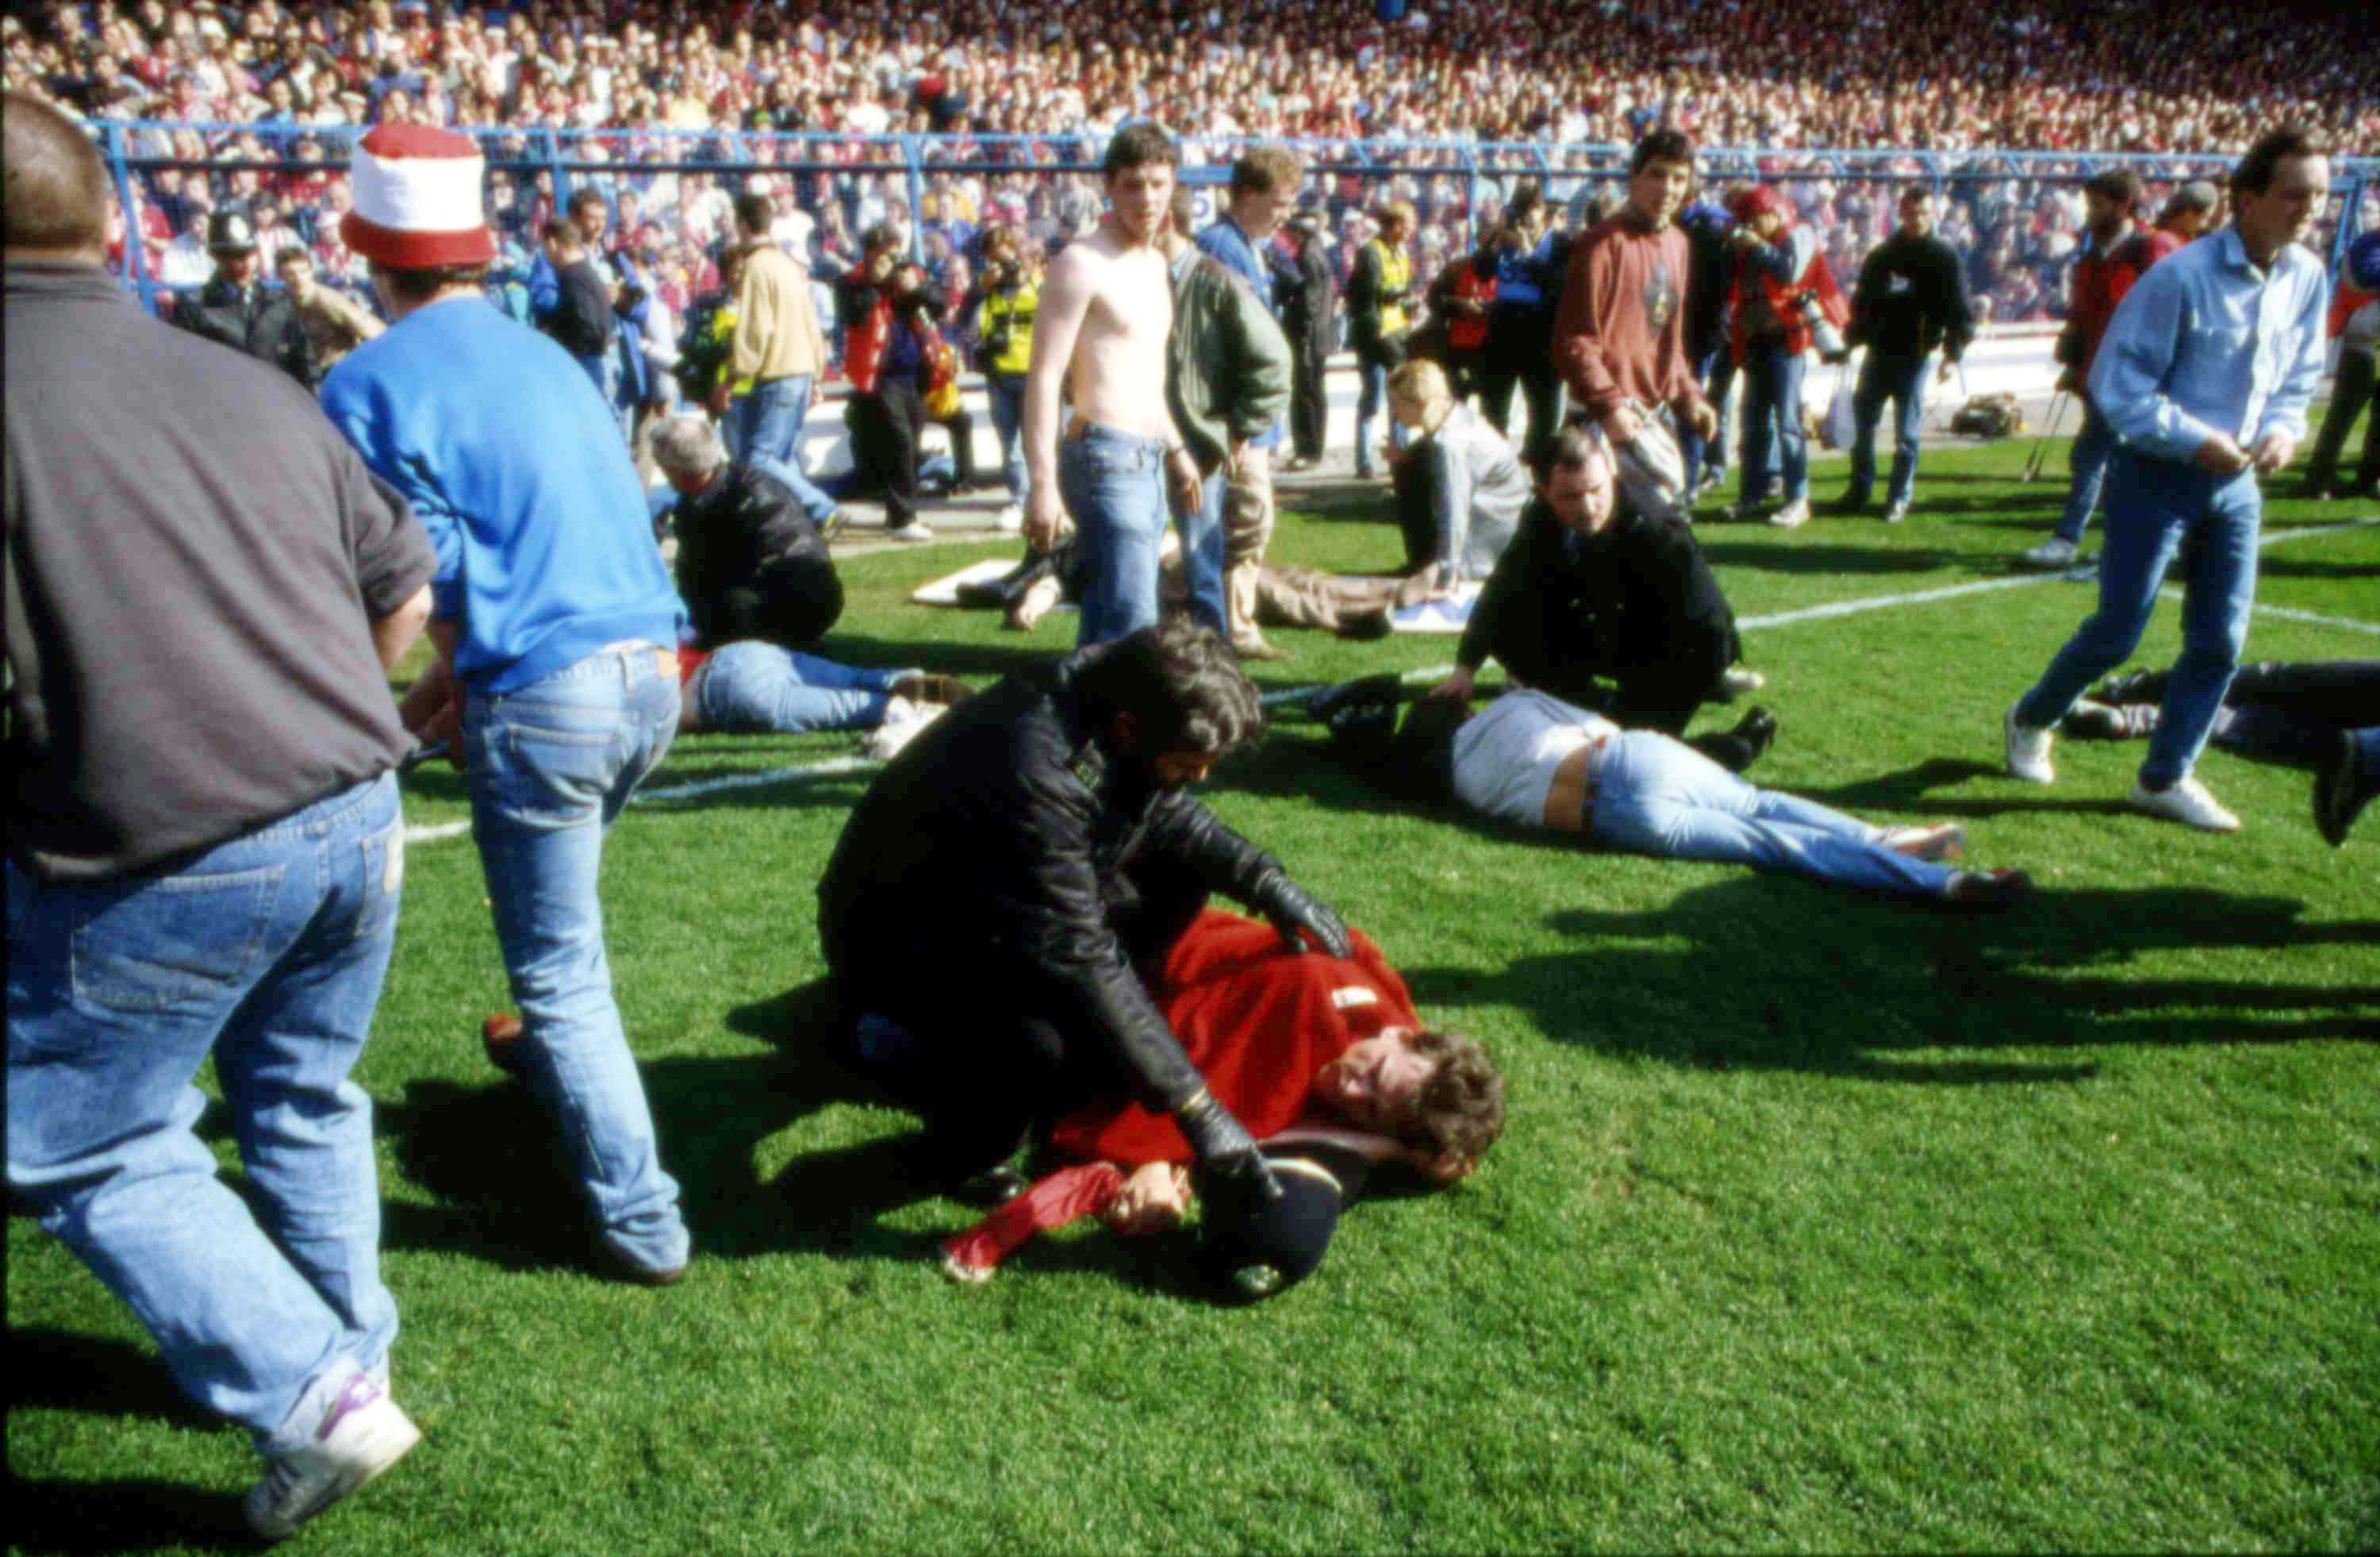 Hillsboroughkatastrofen krävde 96 människoliv.